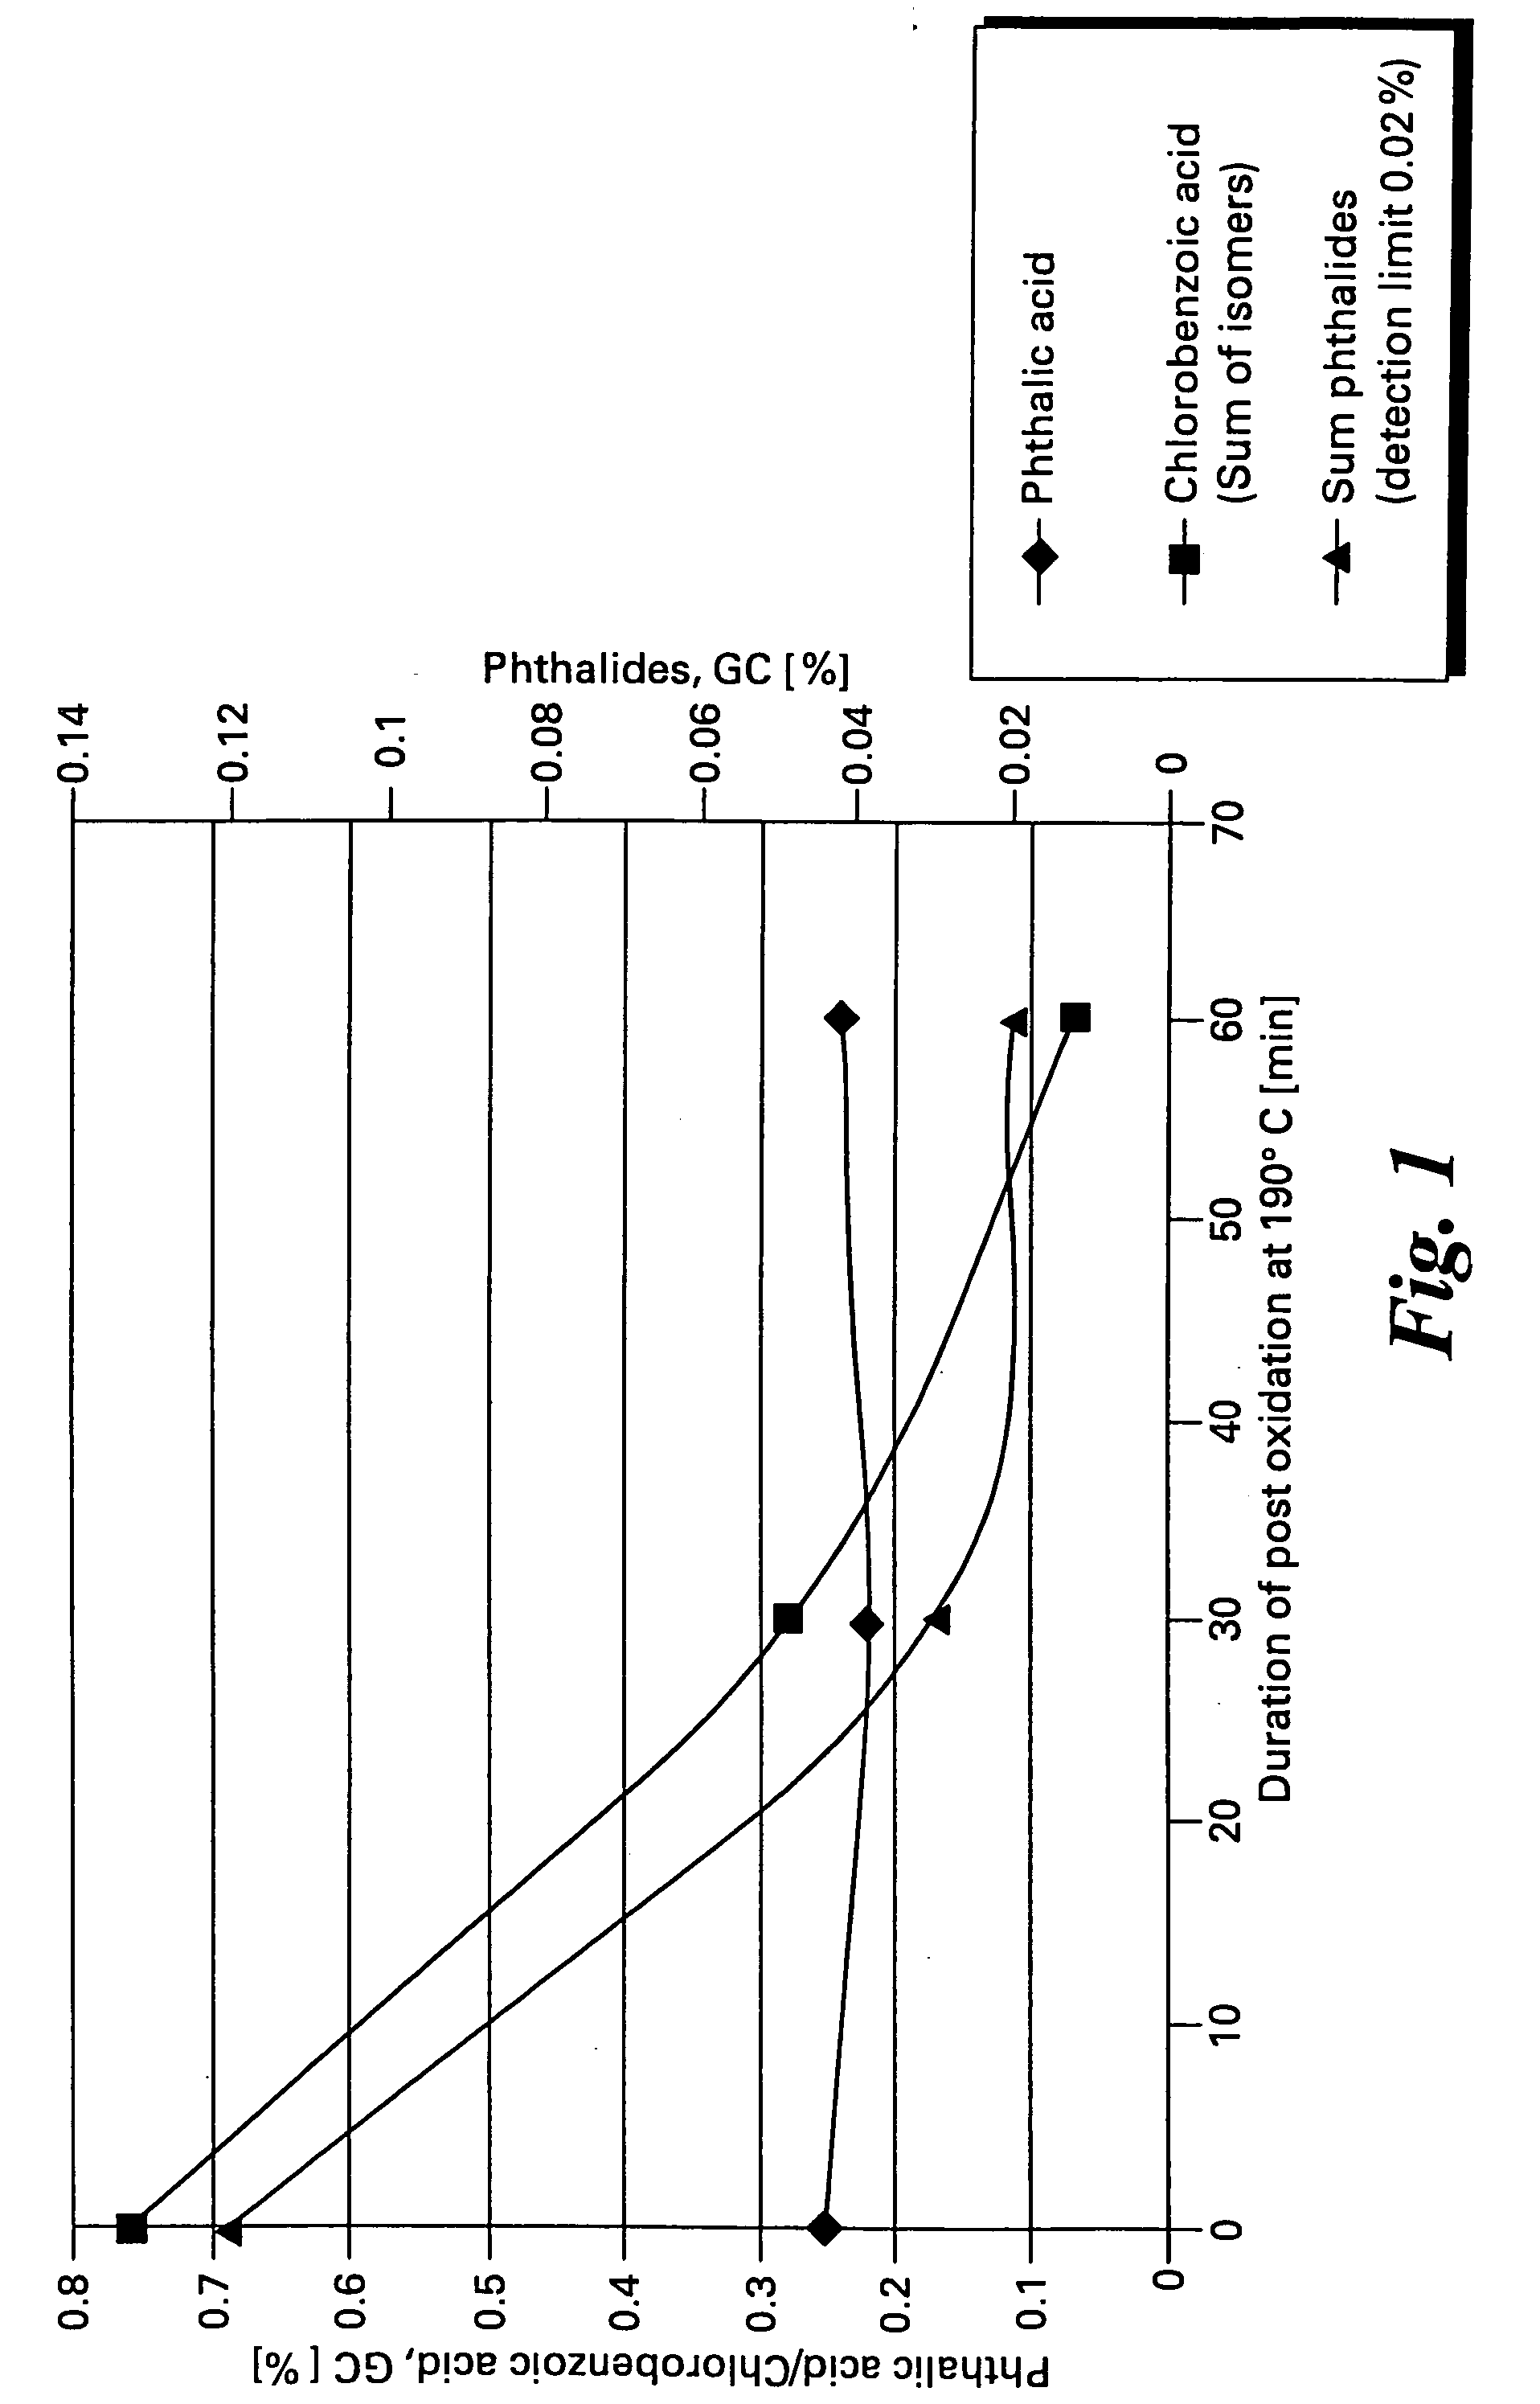 Method of making halophthalic acids and halophthalic anhydrides